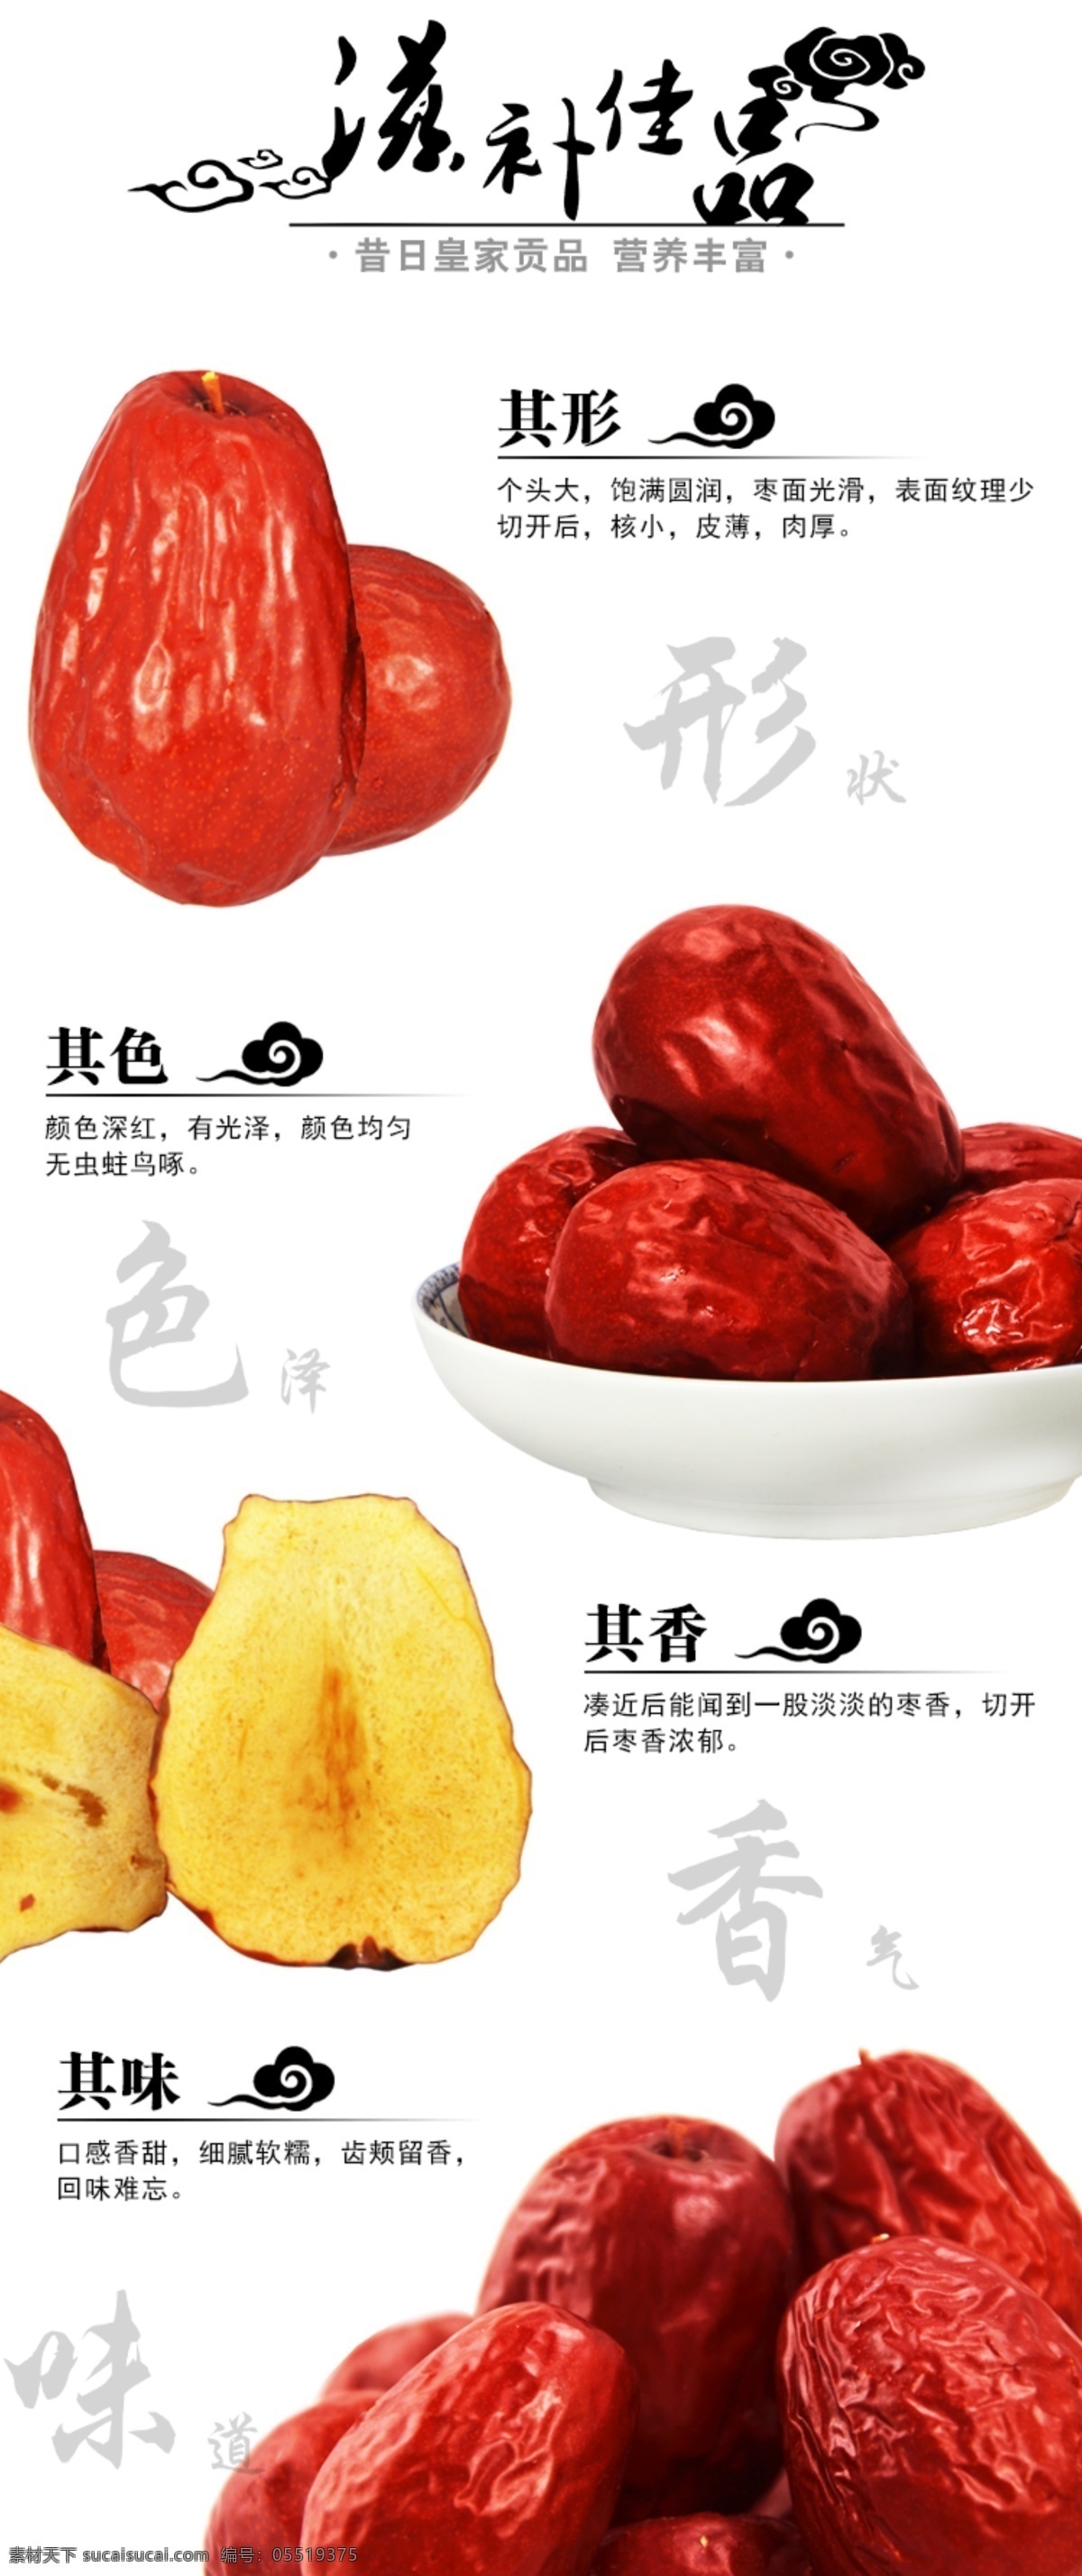 淘宝 大枣 详情 页 源文件 产品描述 红枣 食品 天猫 大枣描述 设计淘宝 白色